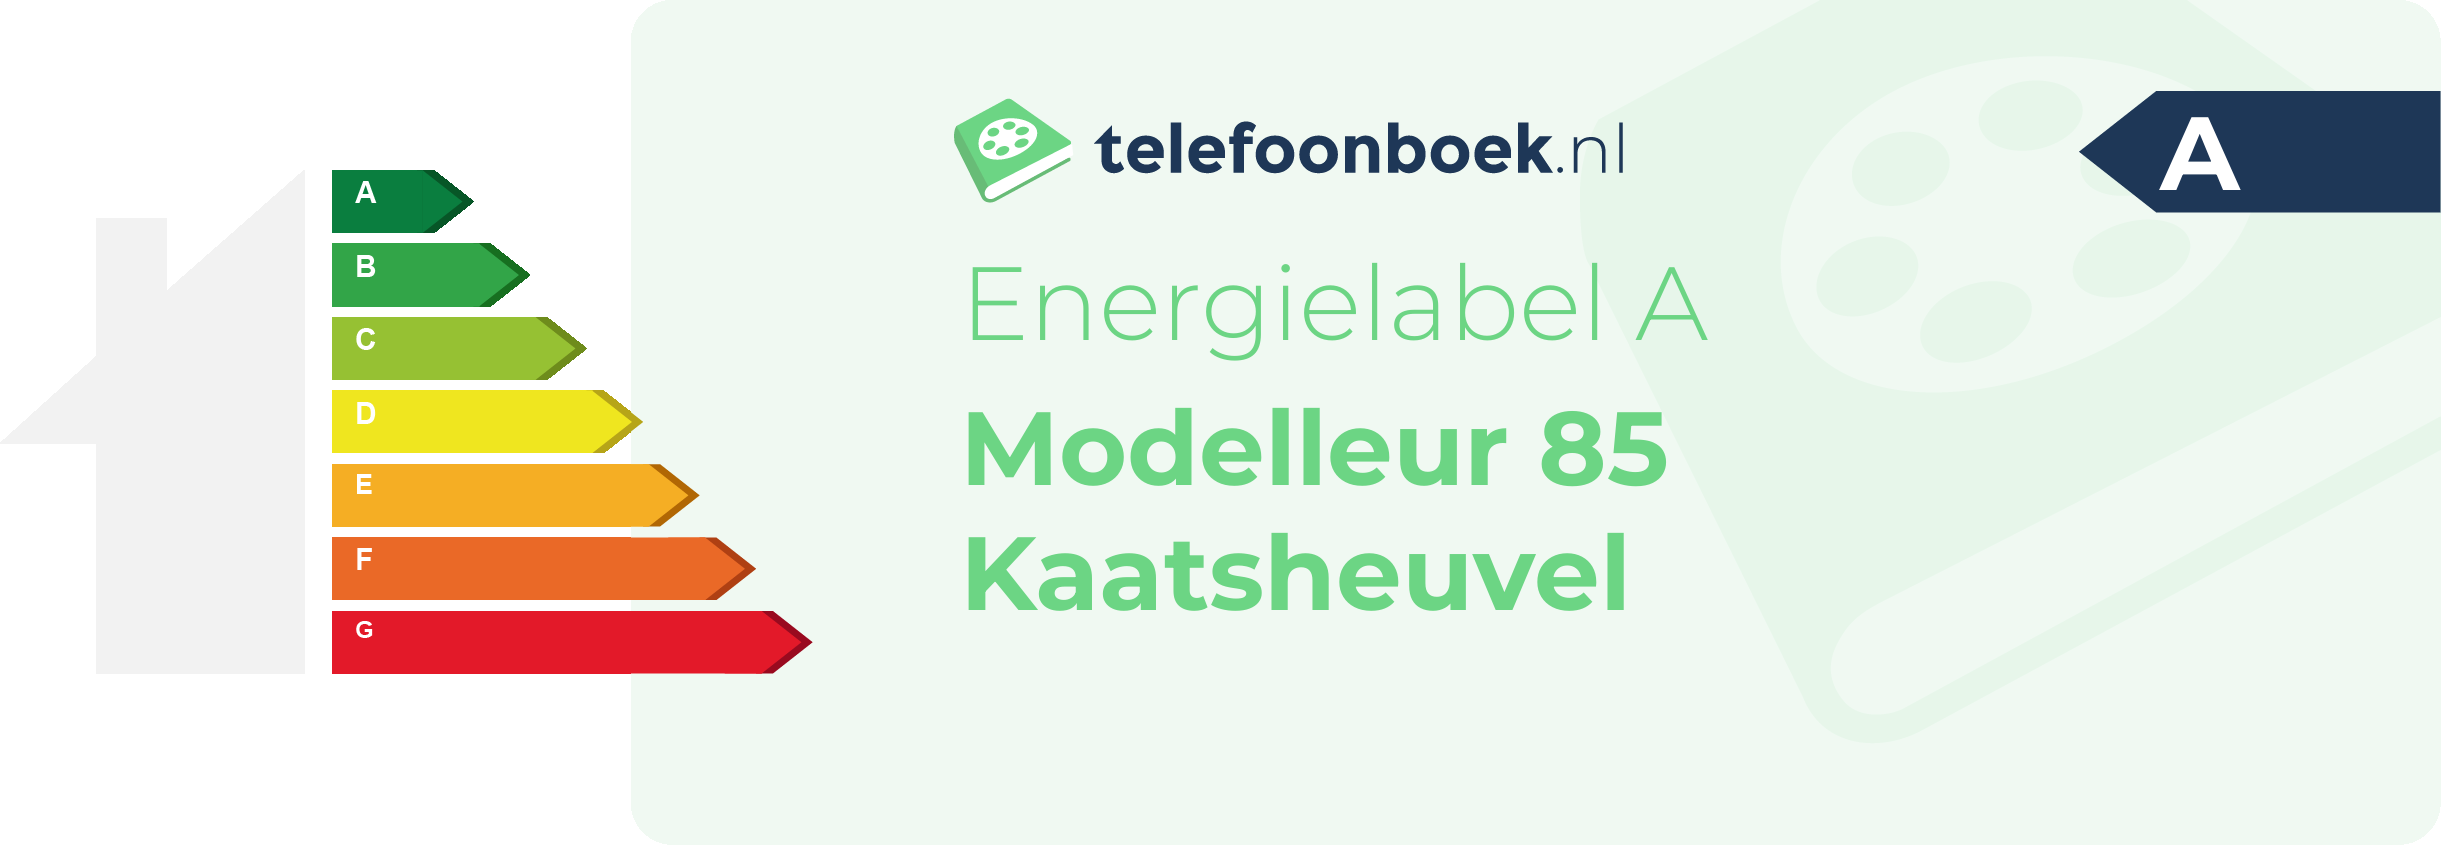 Energielabel Modelleur 85 Kaatsheuvel